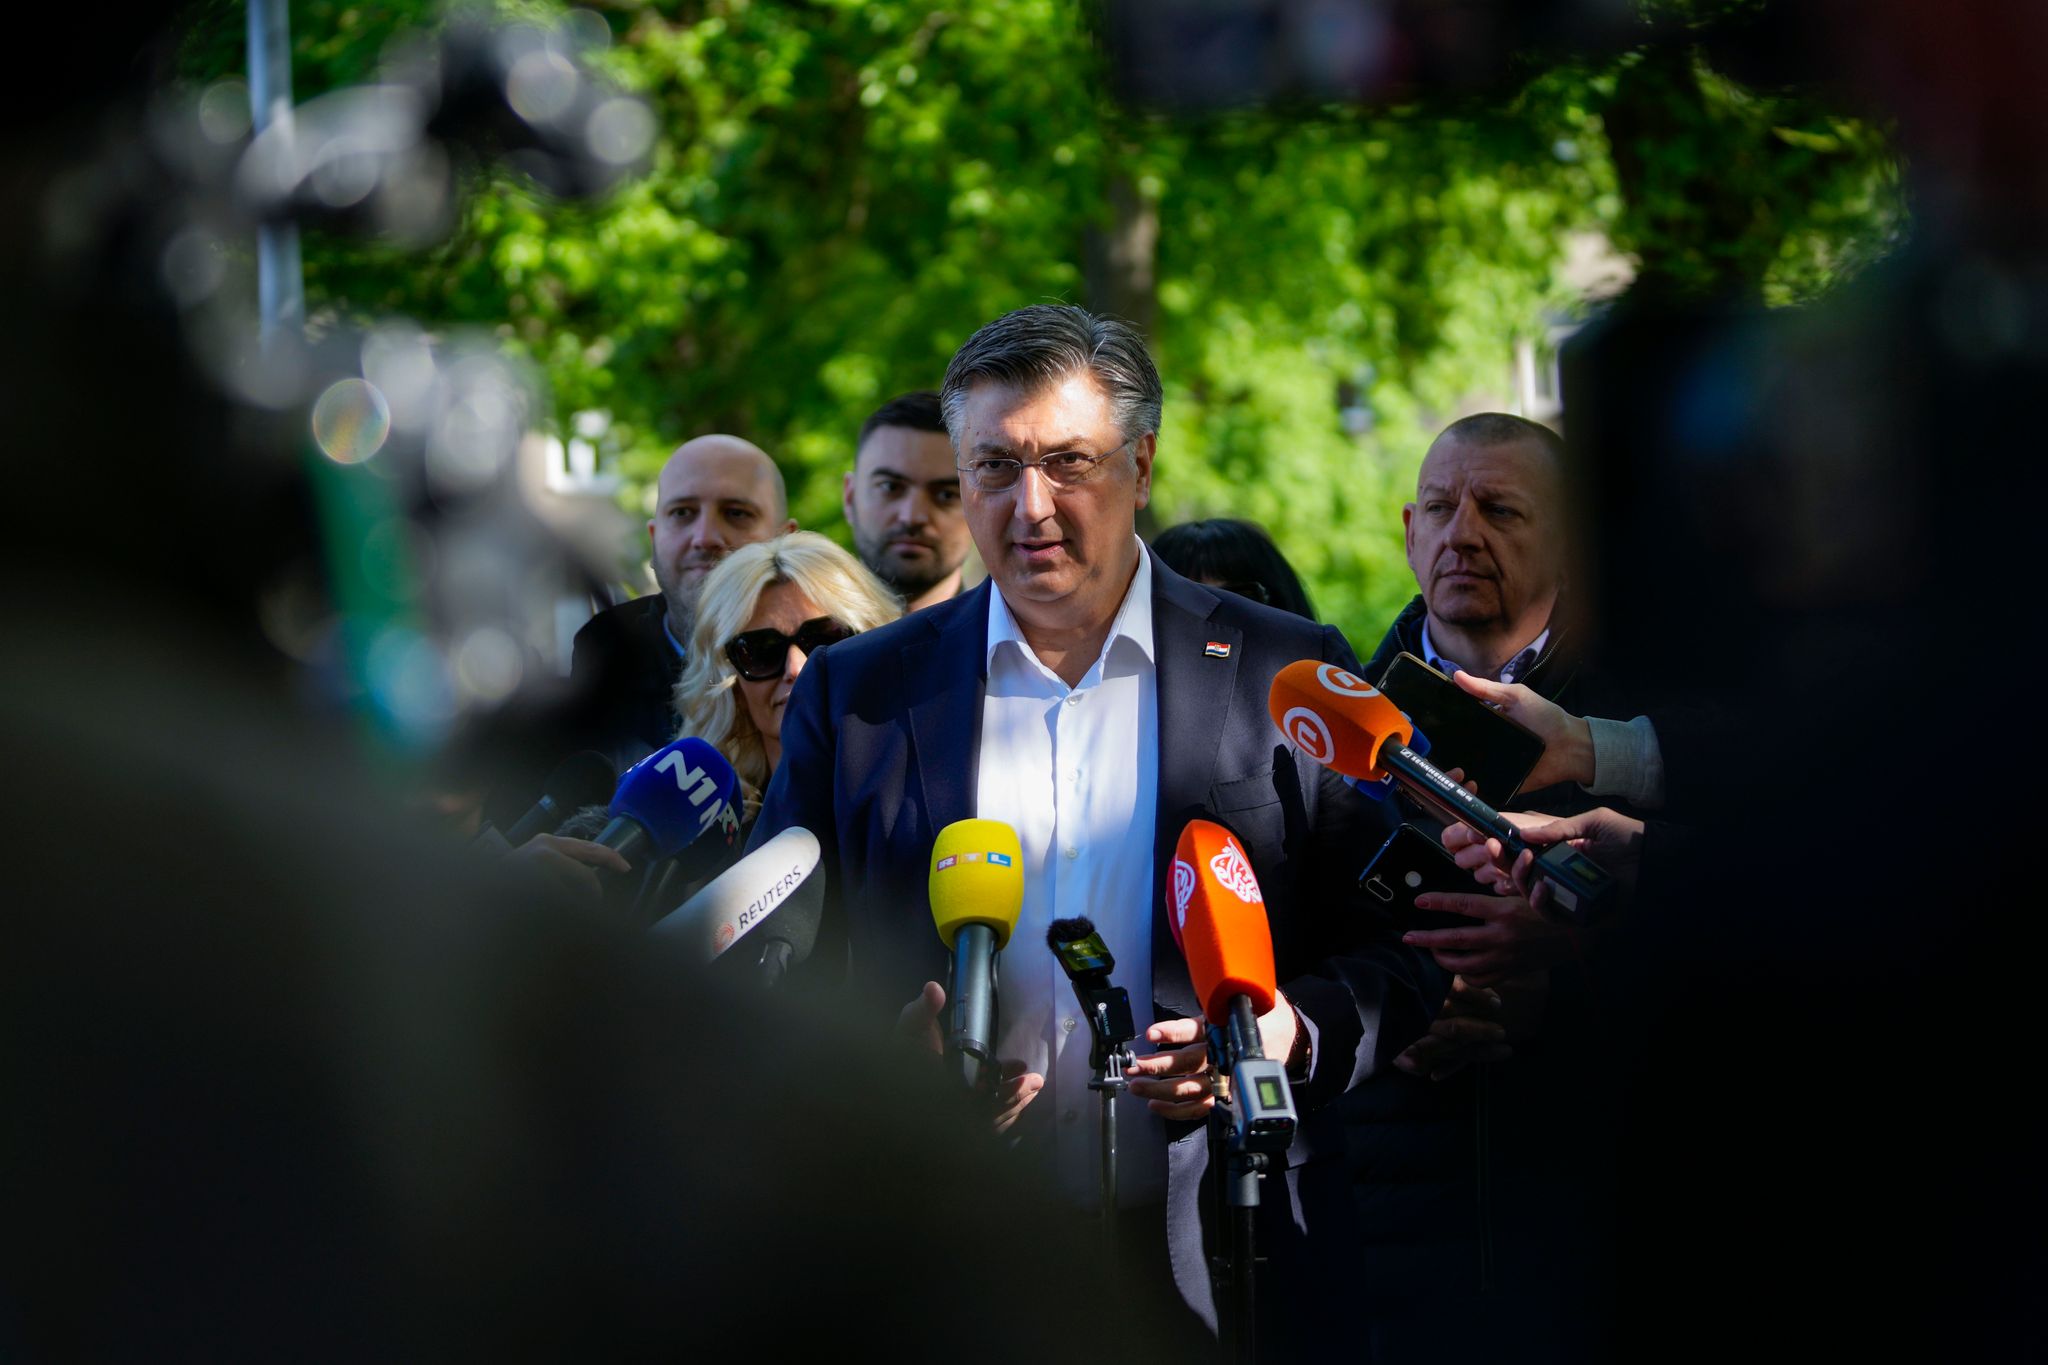 regierungspartei in kroatien bei parlamentswahl vorne